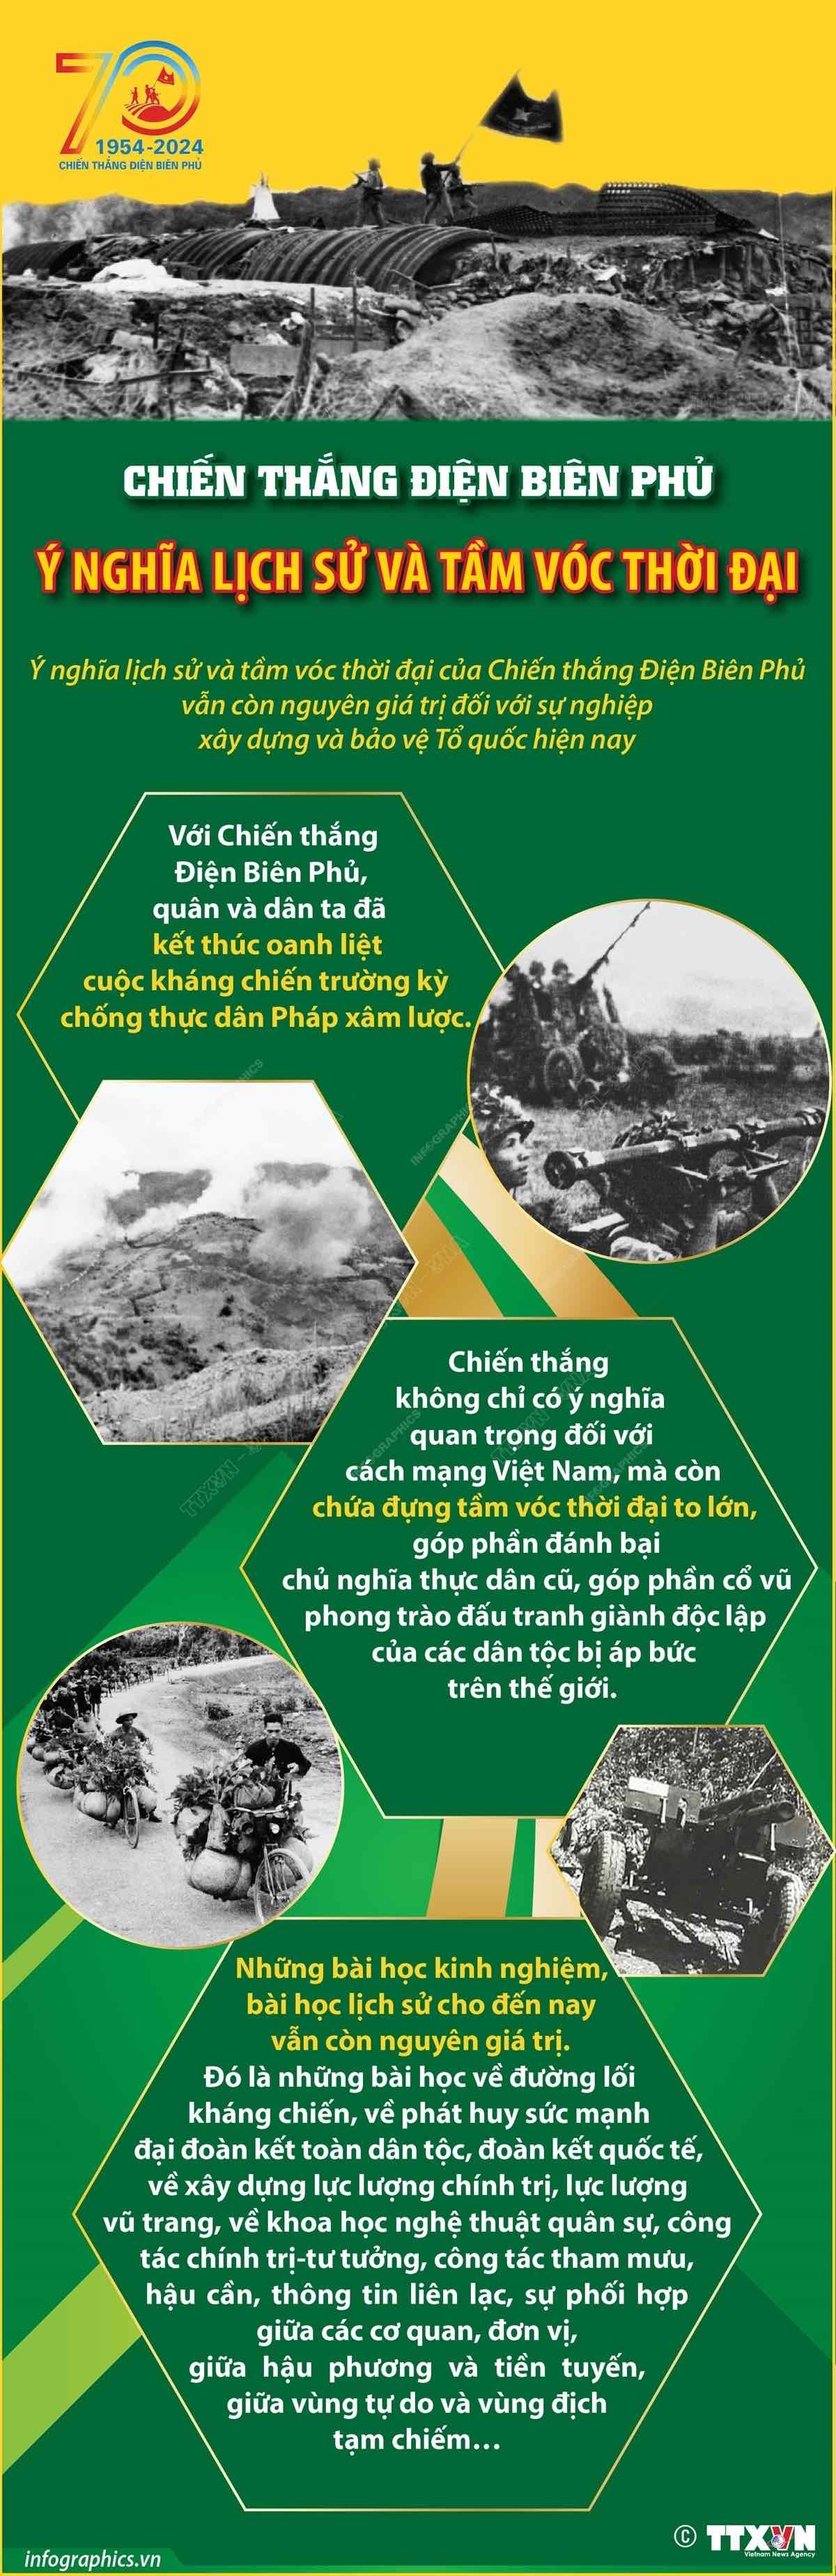 Ý nghĩa lịch sử và tầm vóc thời đại của Chiến thắng Điện Biên Phủ